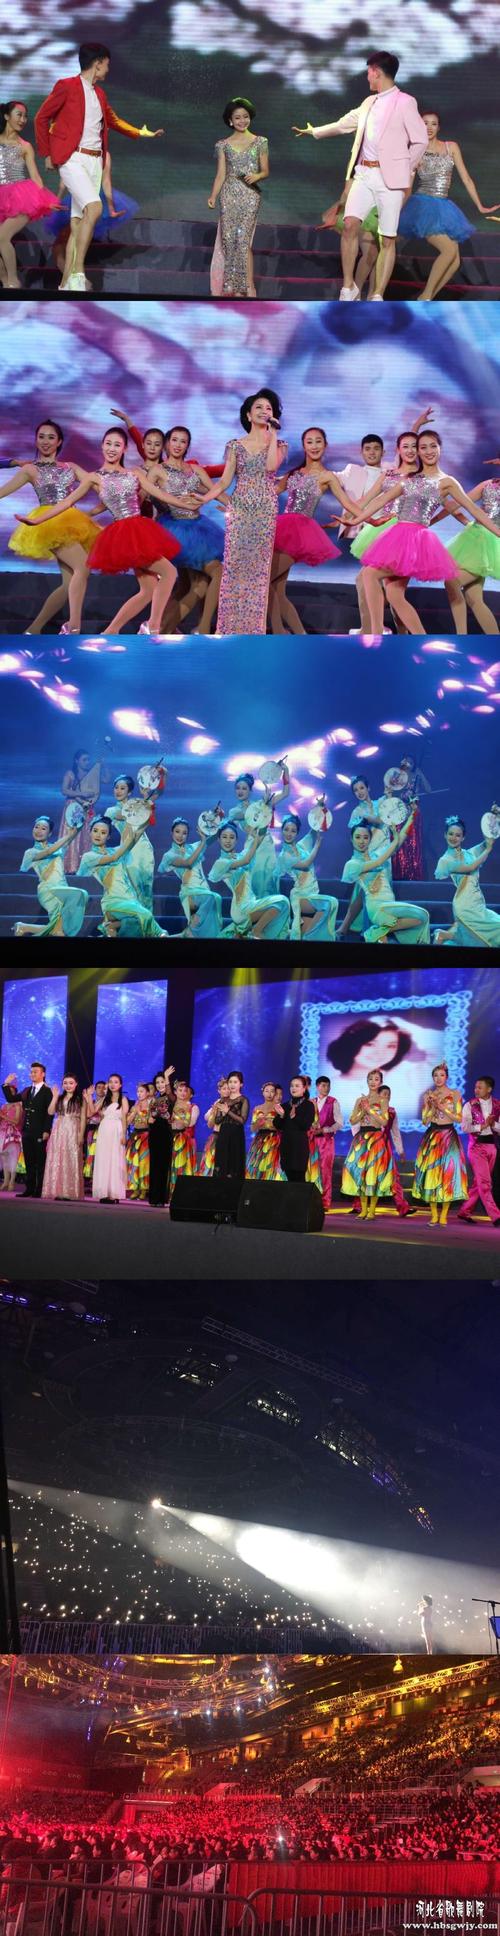 河北省歌舞剧院歌舞团参加的留君岁月邓丽君演唱会在沧州市体育馆内